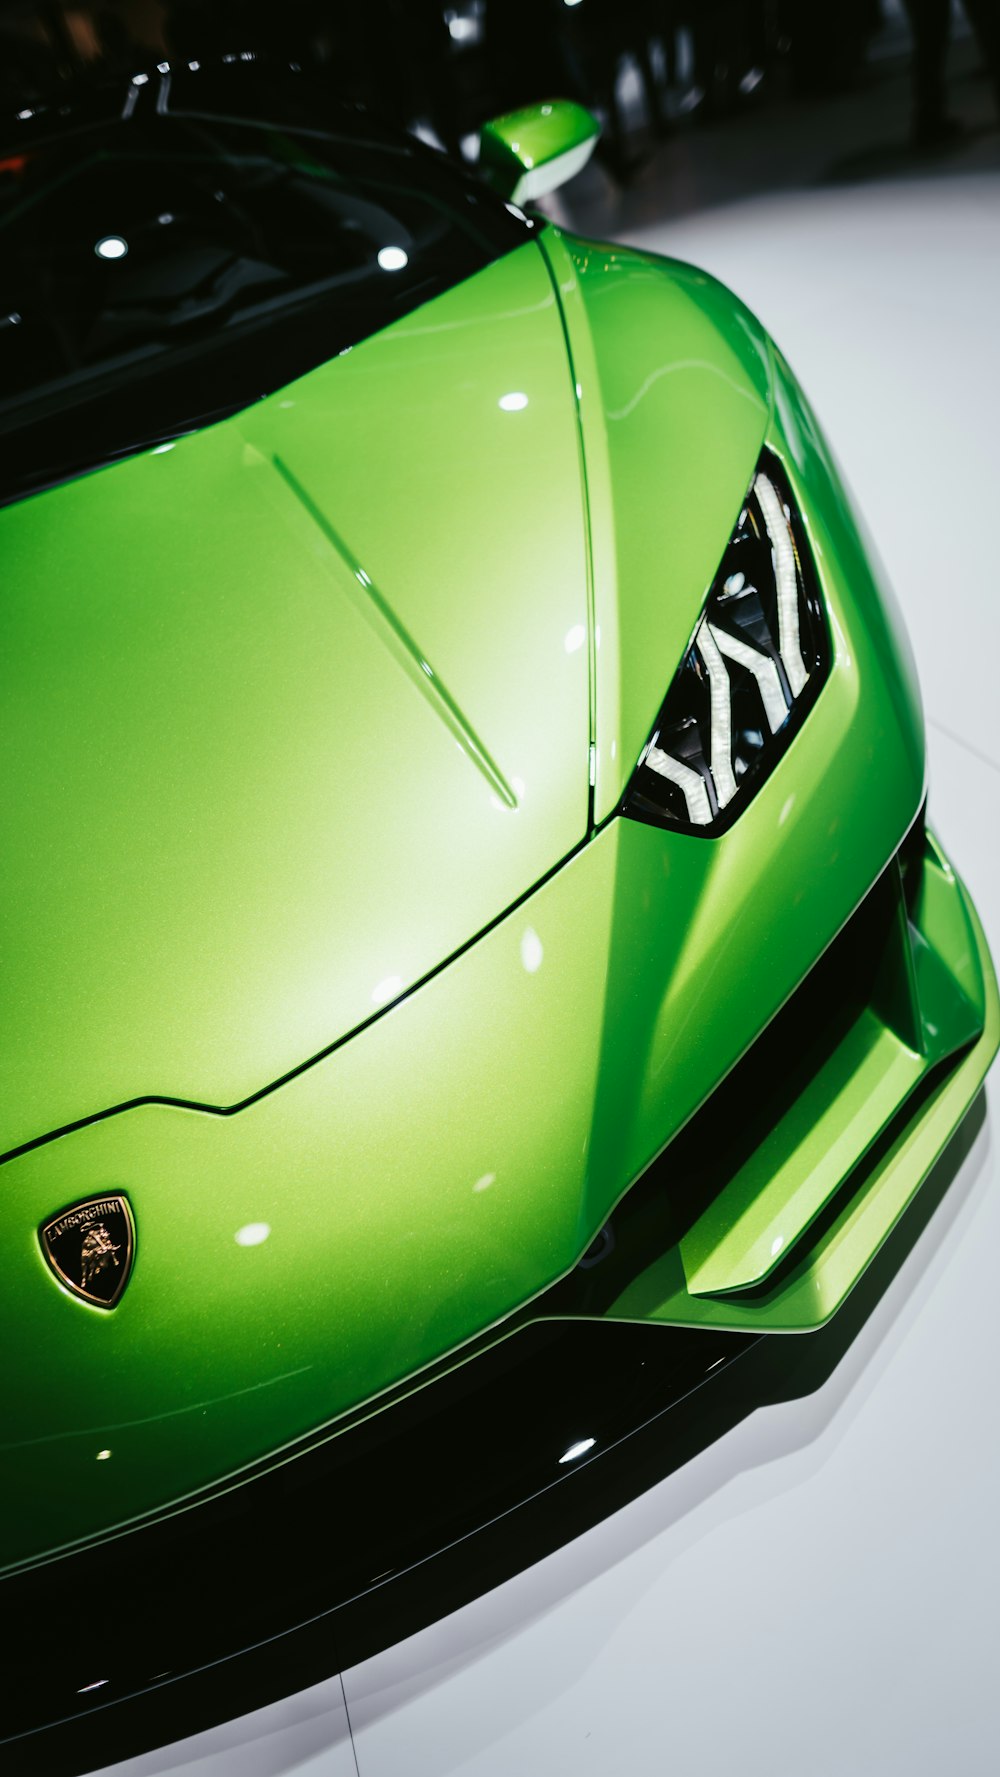 a green sports car